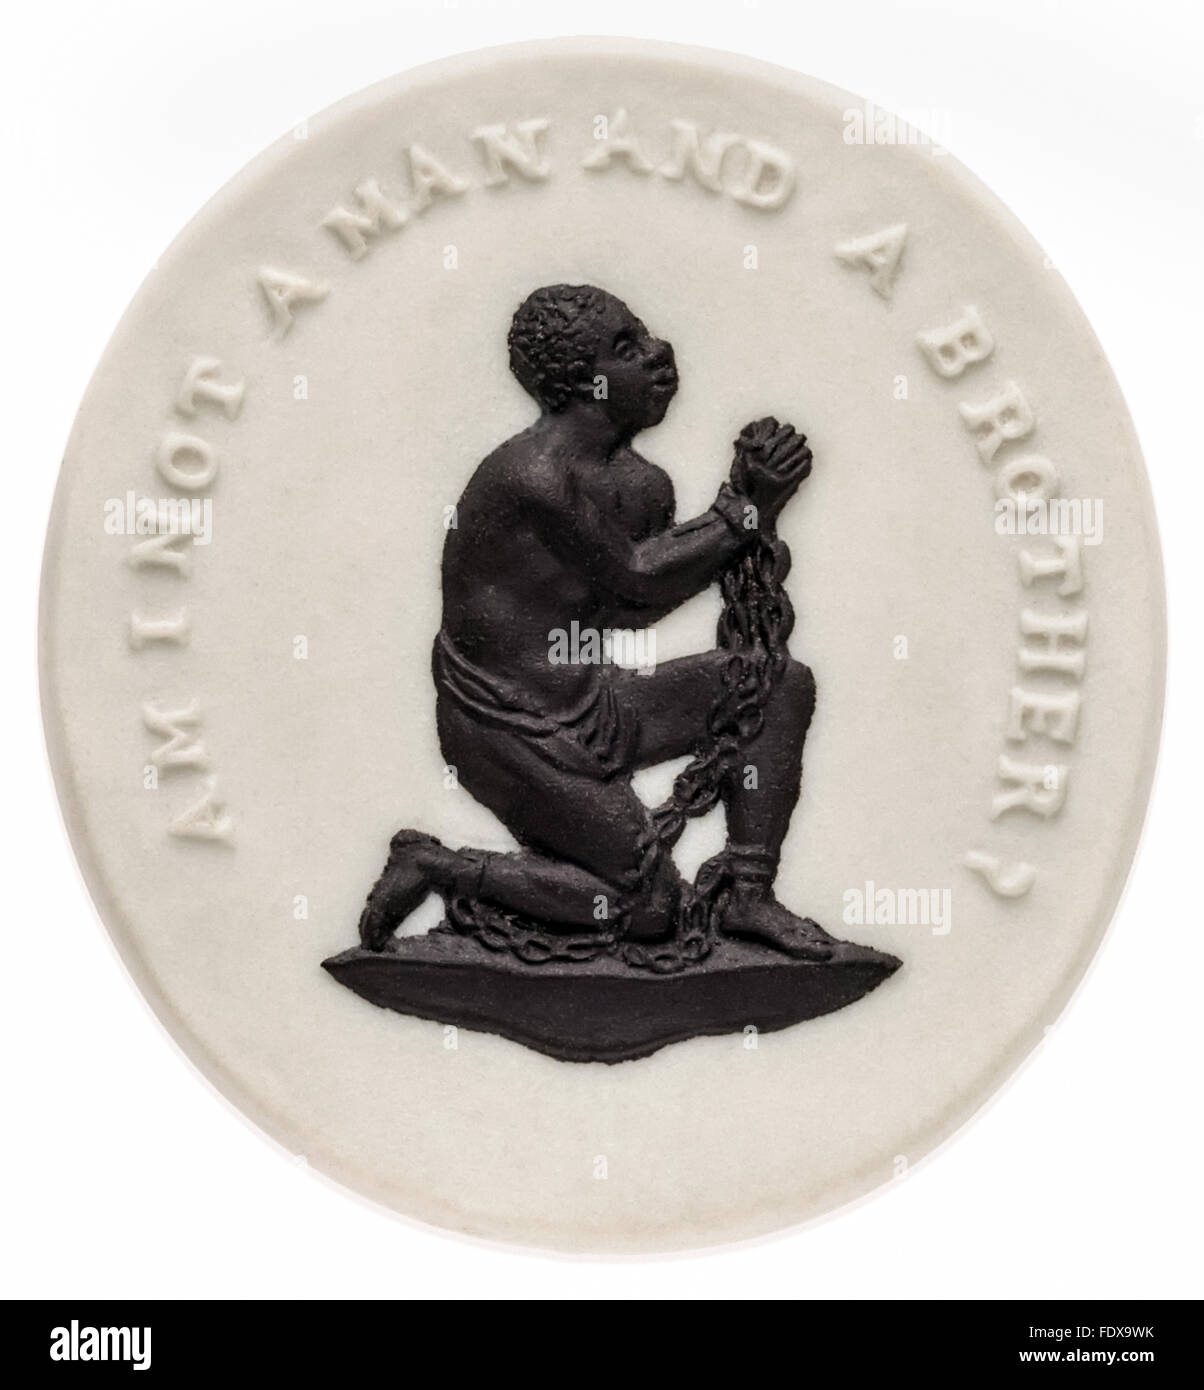 "Bin ich kein Mensch und ein Bruder?" Wedgwood Porzellan Medaillon ca. 1787 von William Hackwood (1757 – 1839) entworfen und von der Anti-Sklaverei-Bewegung weit verbreitet. Siehe Beschreibung für mehr Informationen. Stockfoto